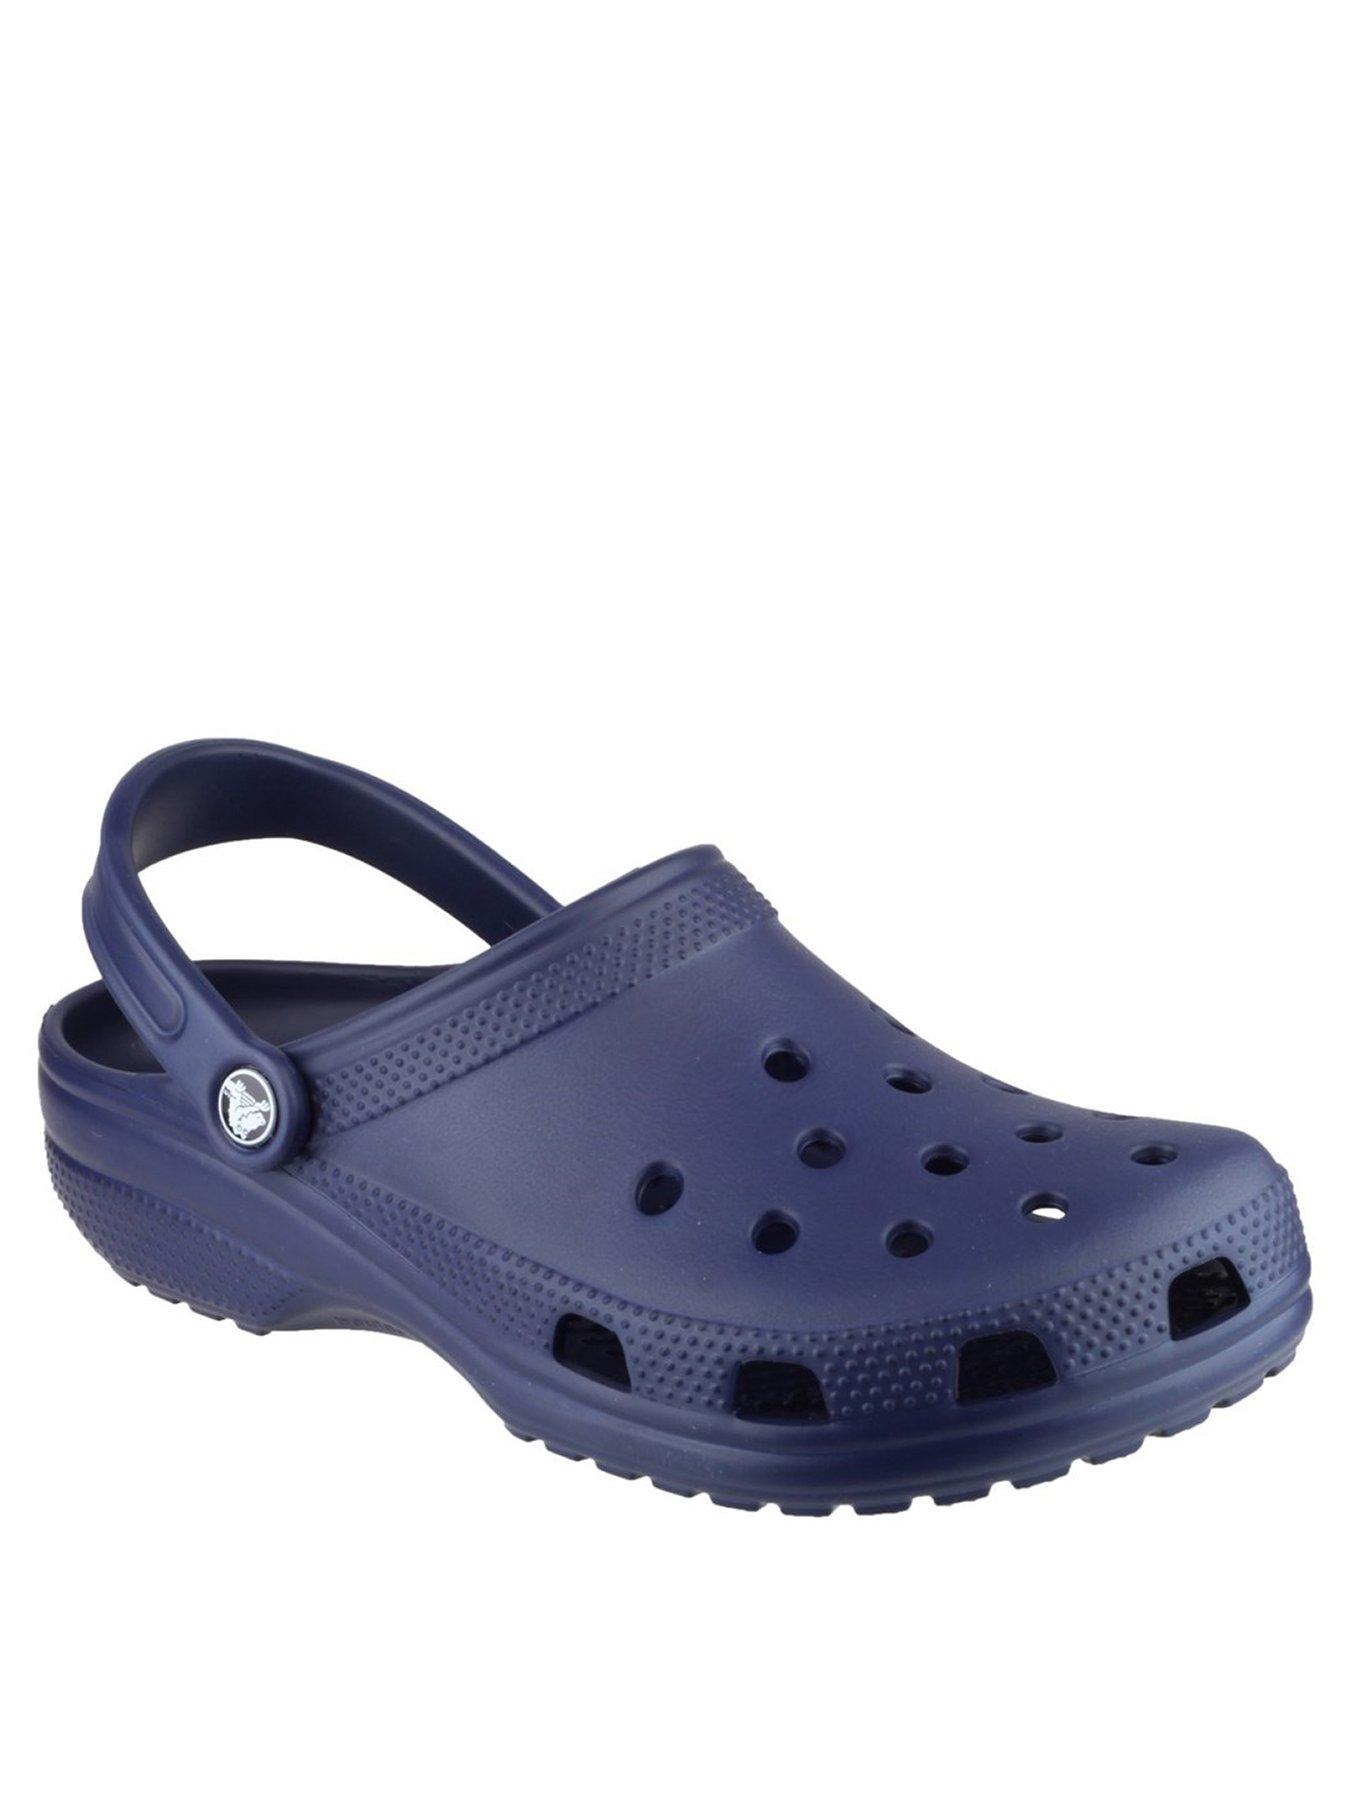 Crocs | Flip flops \u0026 sandals | Shoes 